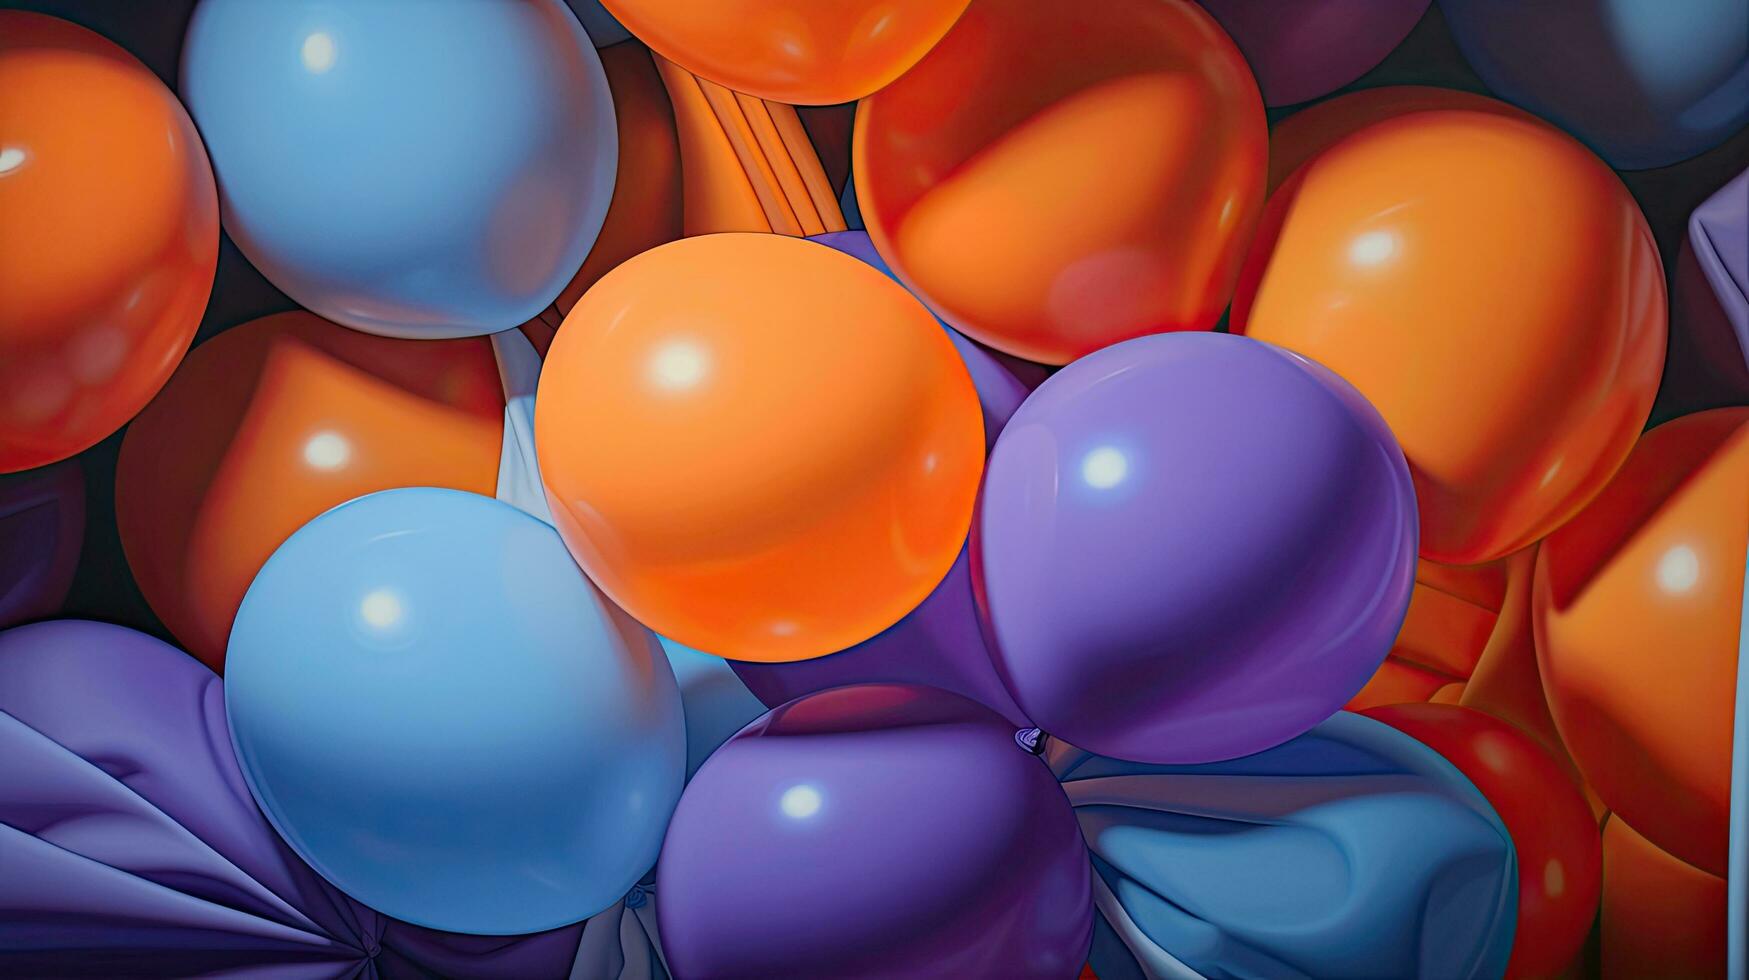 fundo de balões coloridos foto